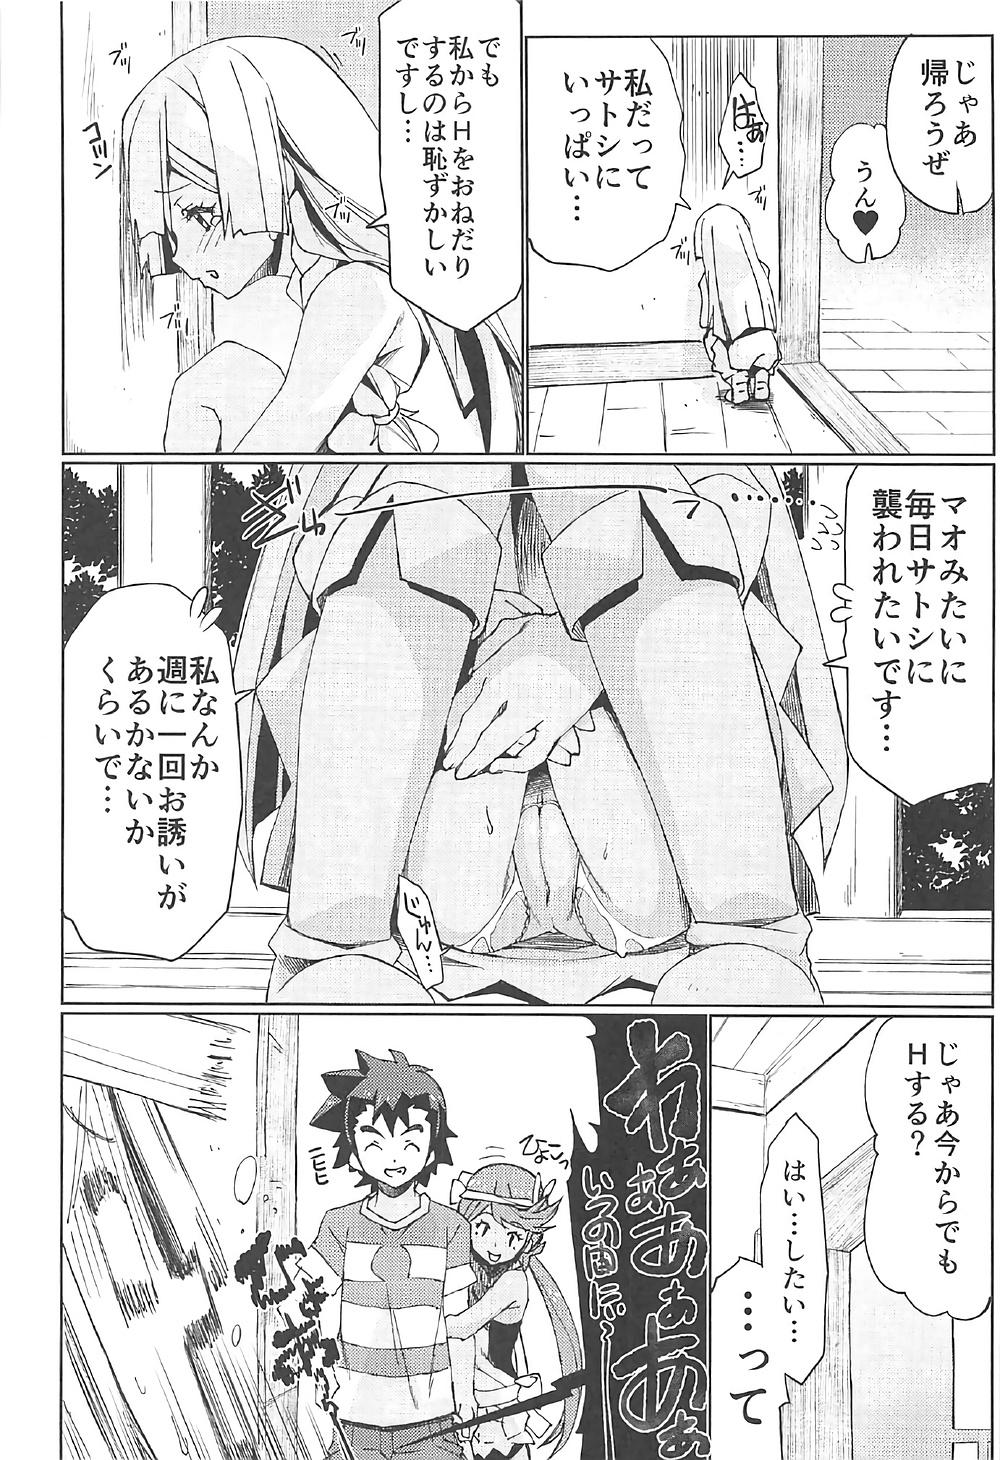 Bigcocks Watashi ga sono Ki ni nareba Ronriteki ni! 2!! - Pokemon Spread - Page 9